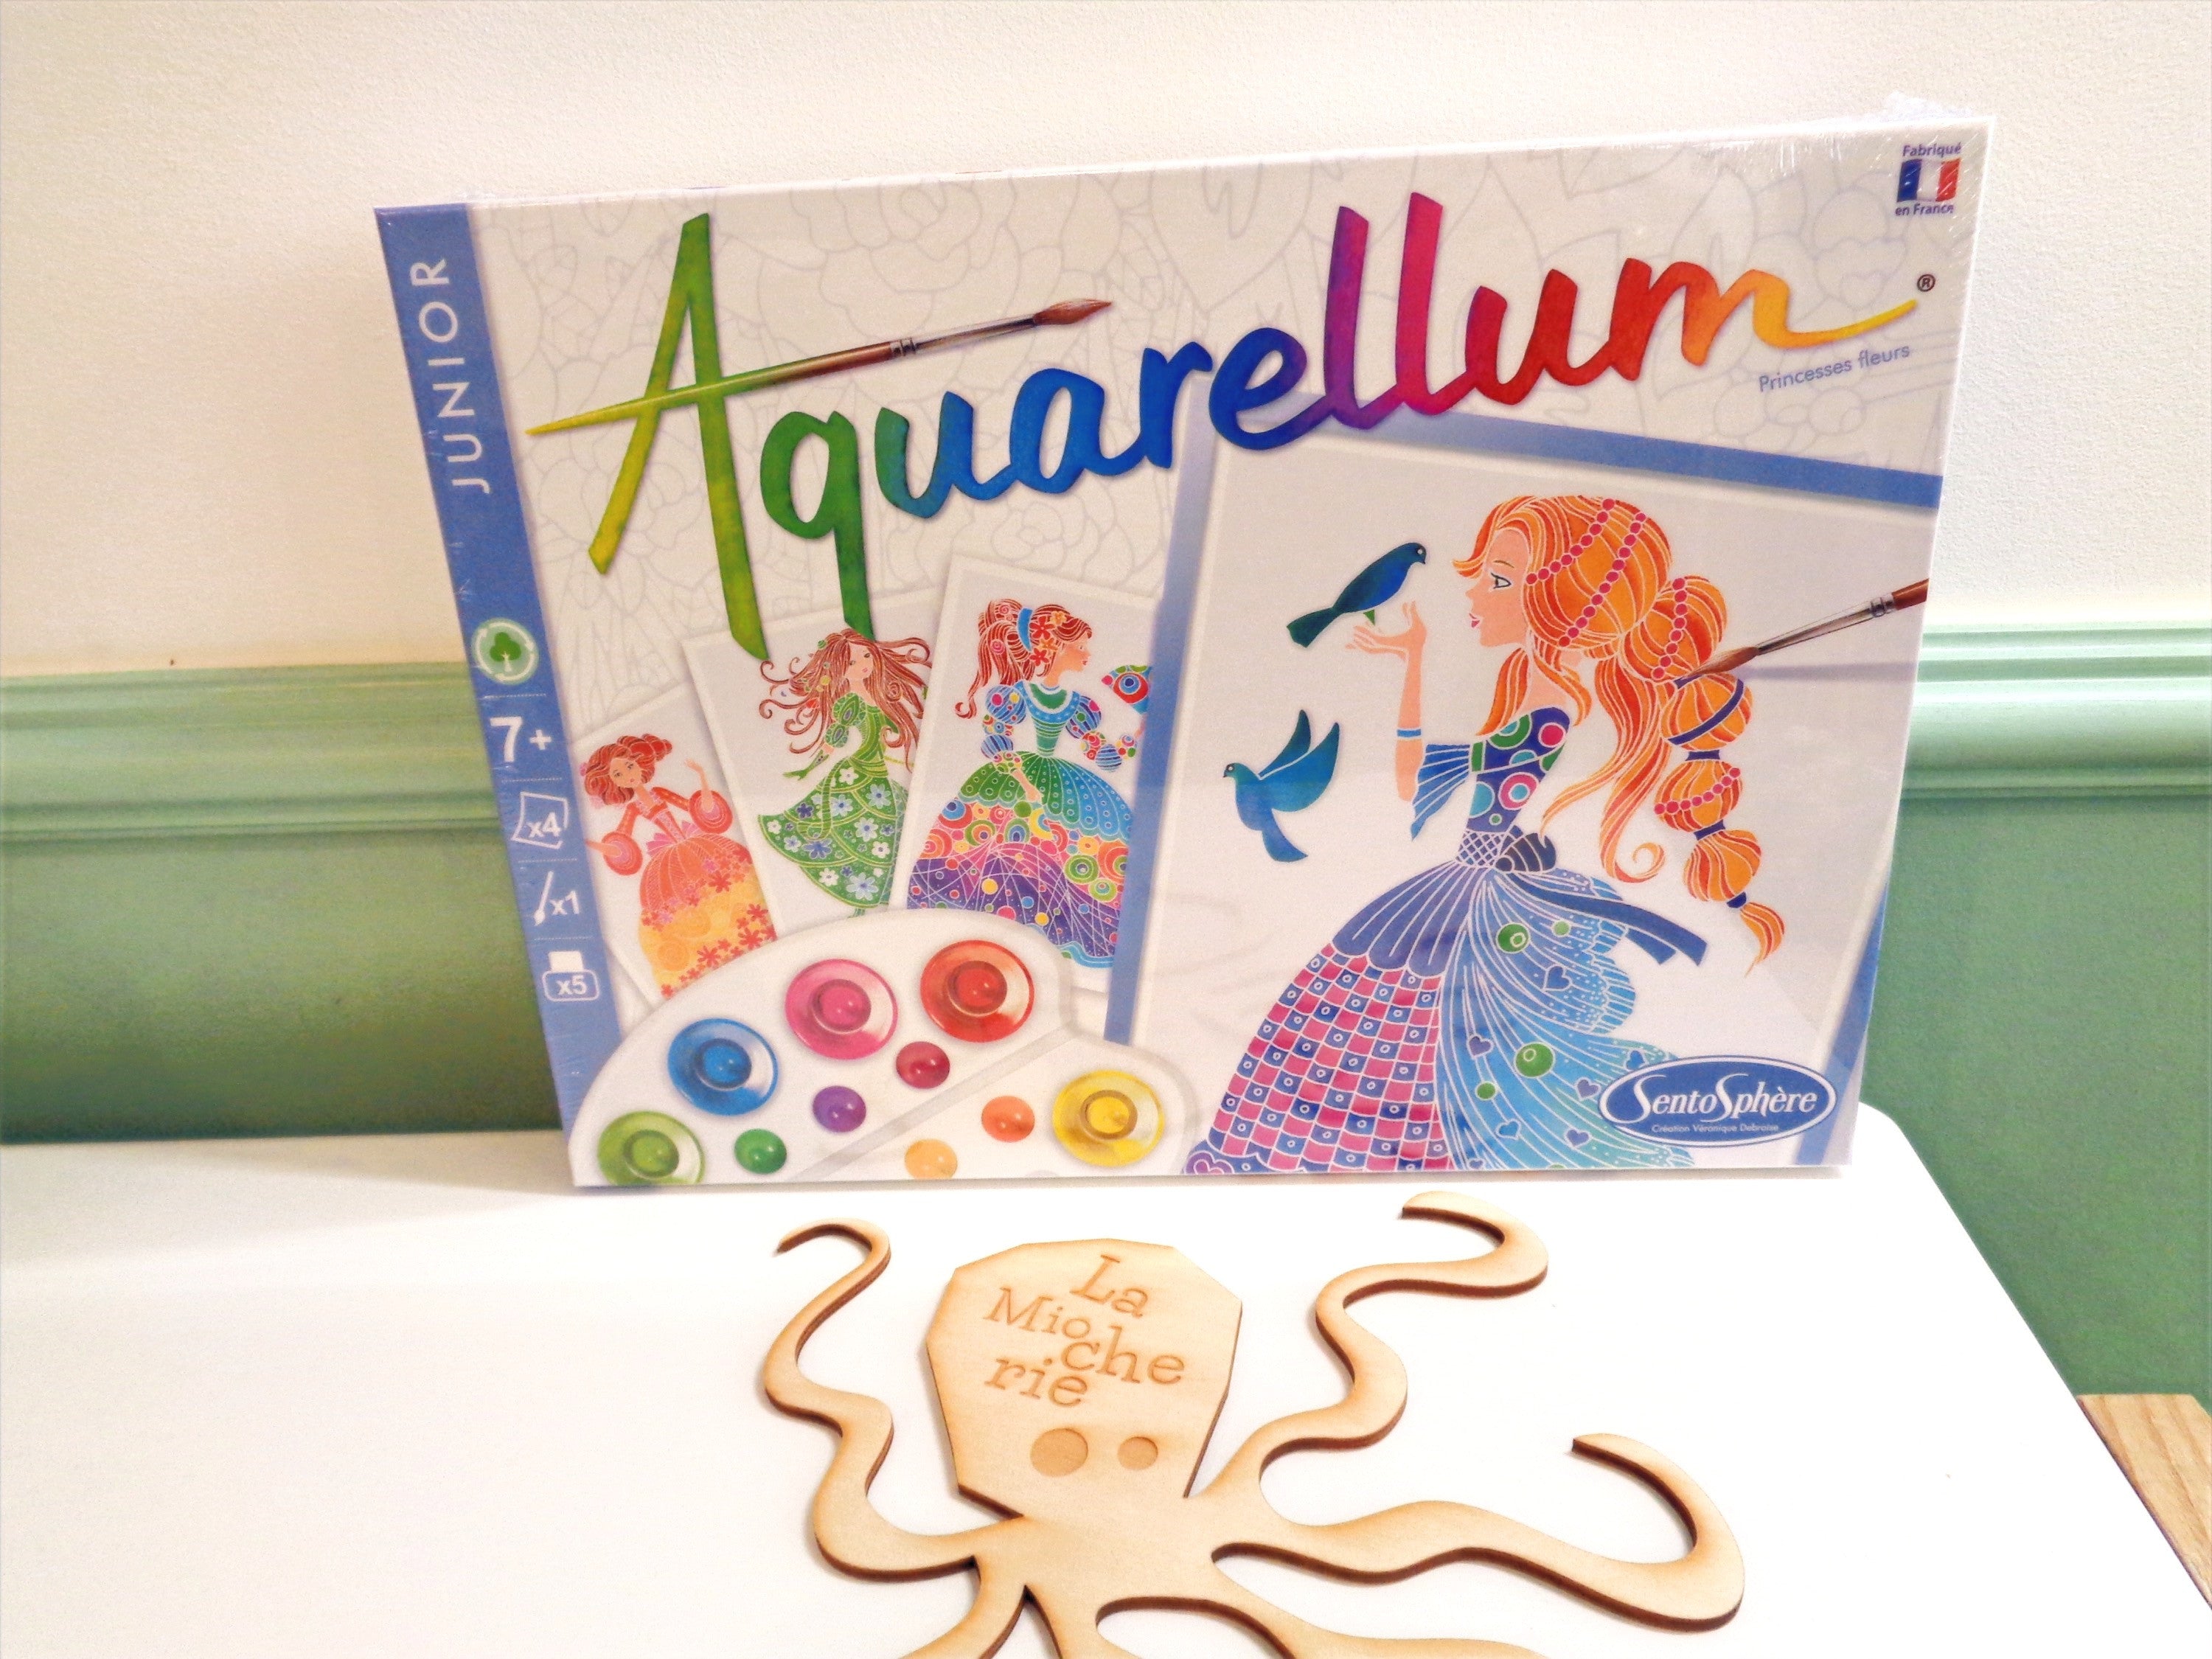 Aquarellum Junior Princesses fleurs - Made in France - Sentosphère